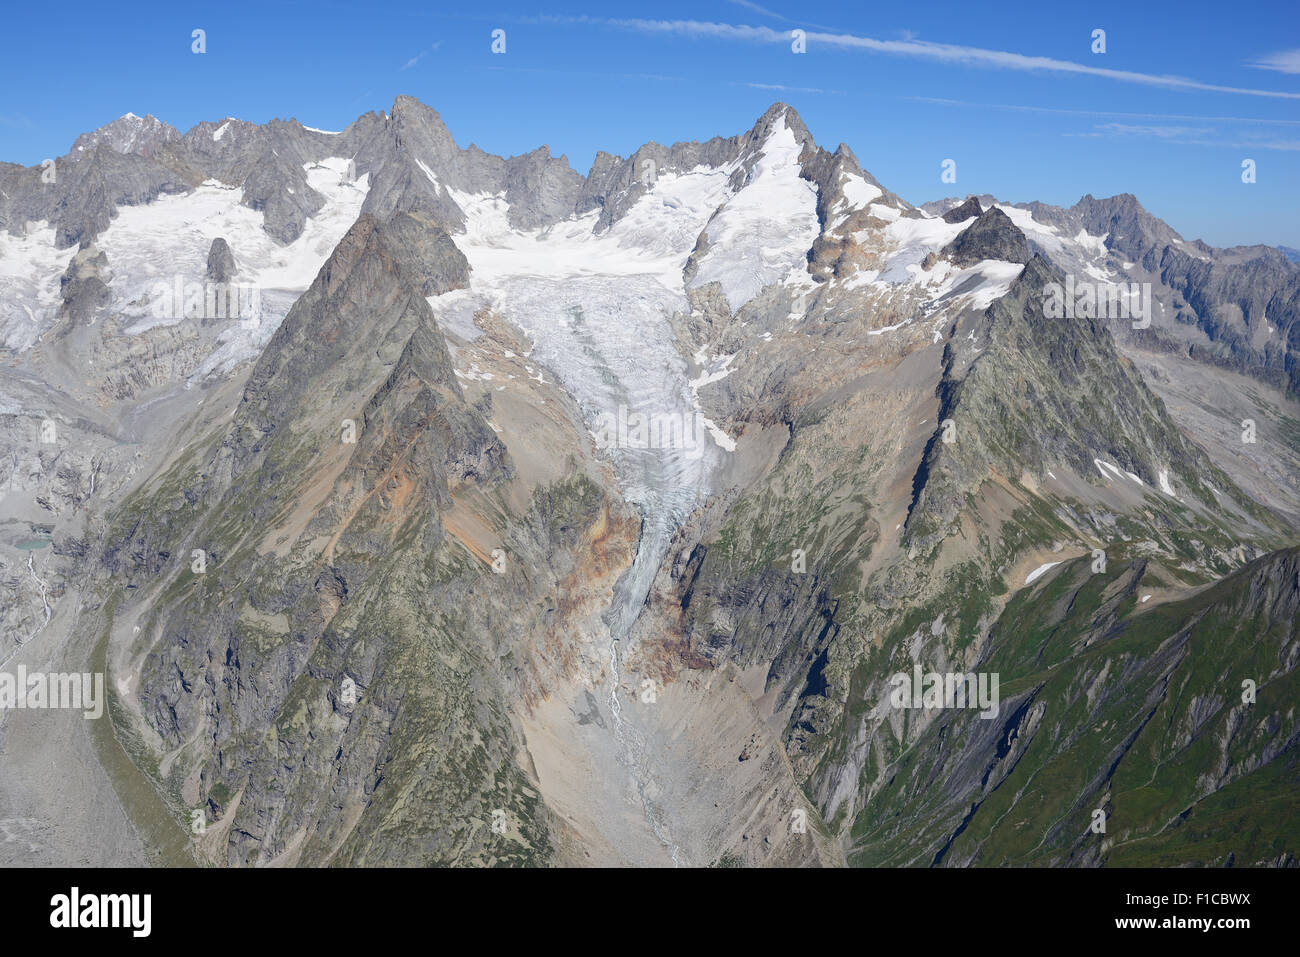 VISTA AÉREA. Aiguille de Triolet (elevación: 3870m) y Mont Dolent (elevación: 3820m). Val Ferret, Courmayeur, Valle de Aosta, Italia. Foto de stock